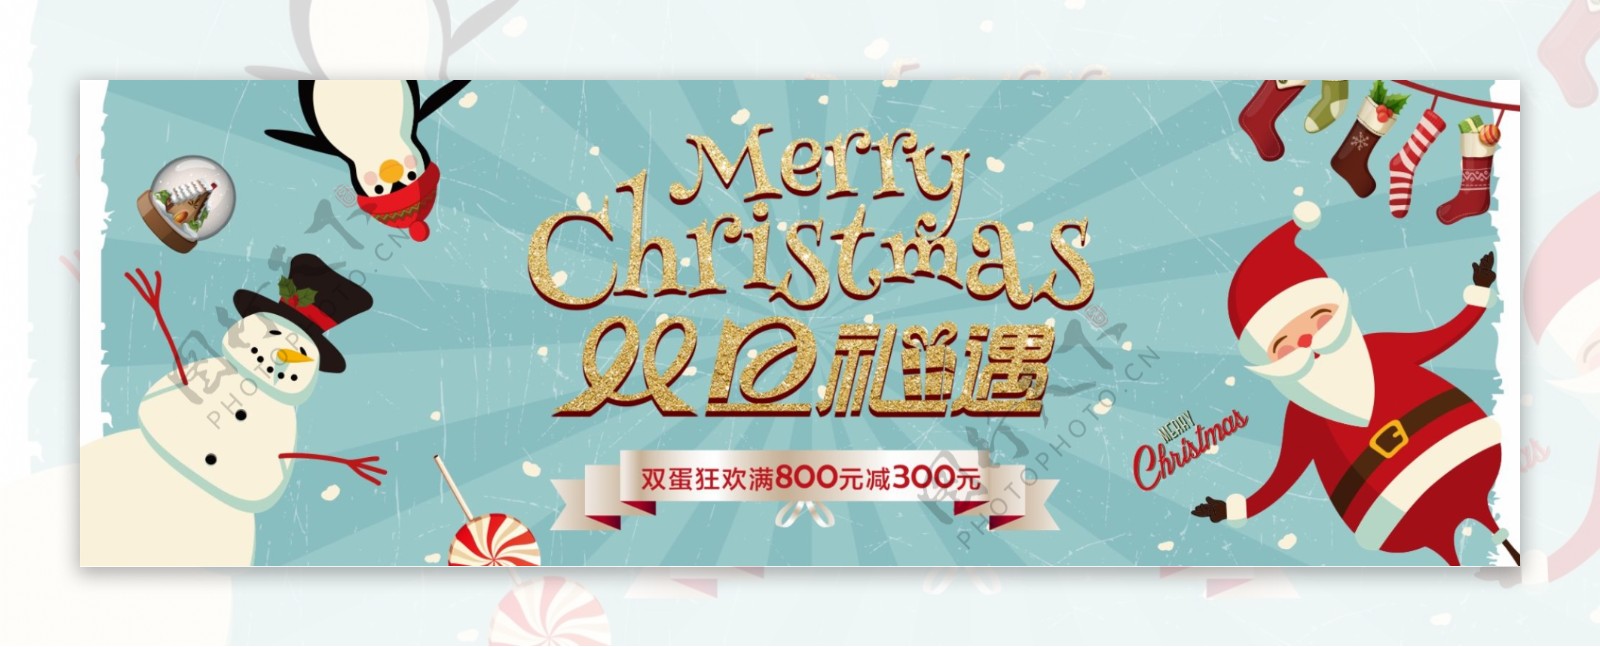 蓝色复古冬季下雪圣诞节电商banner